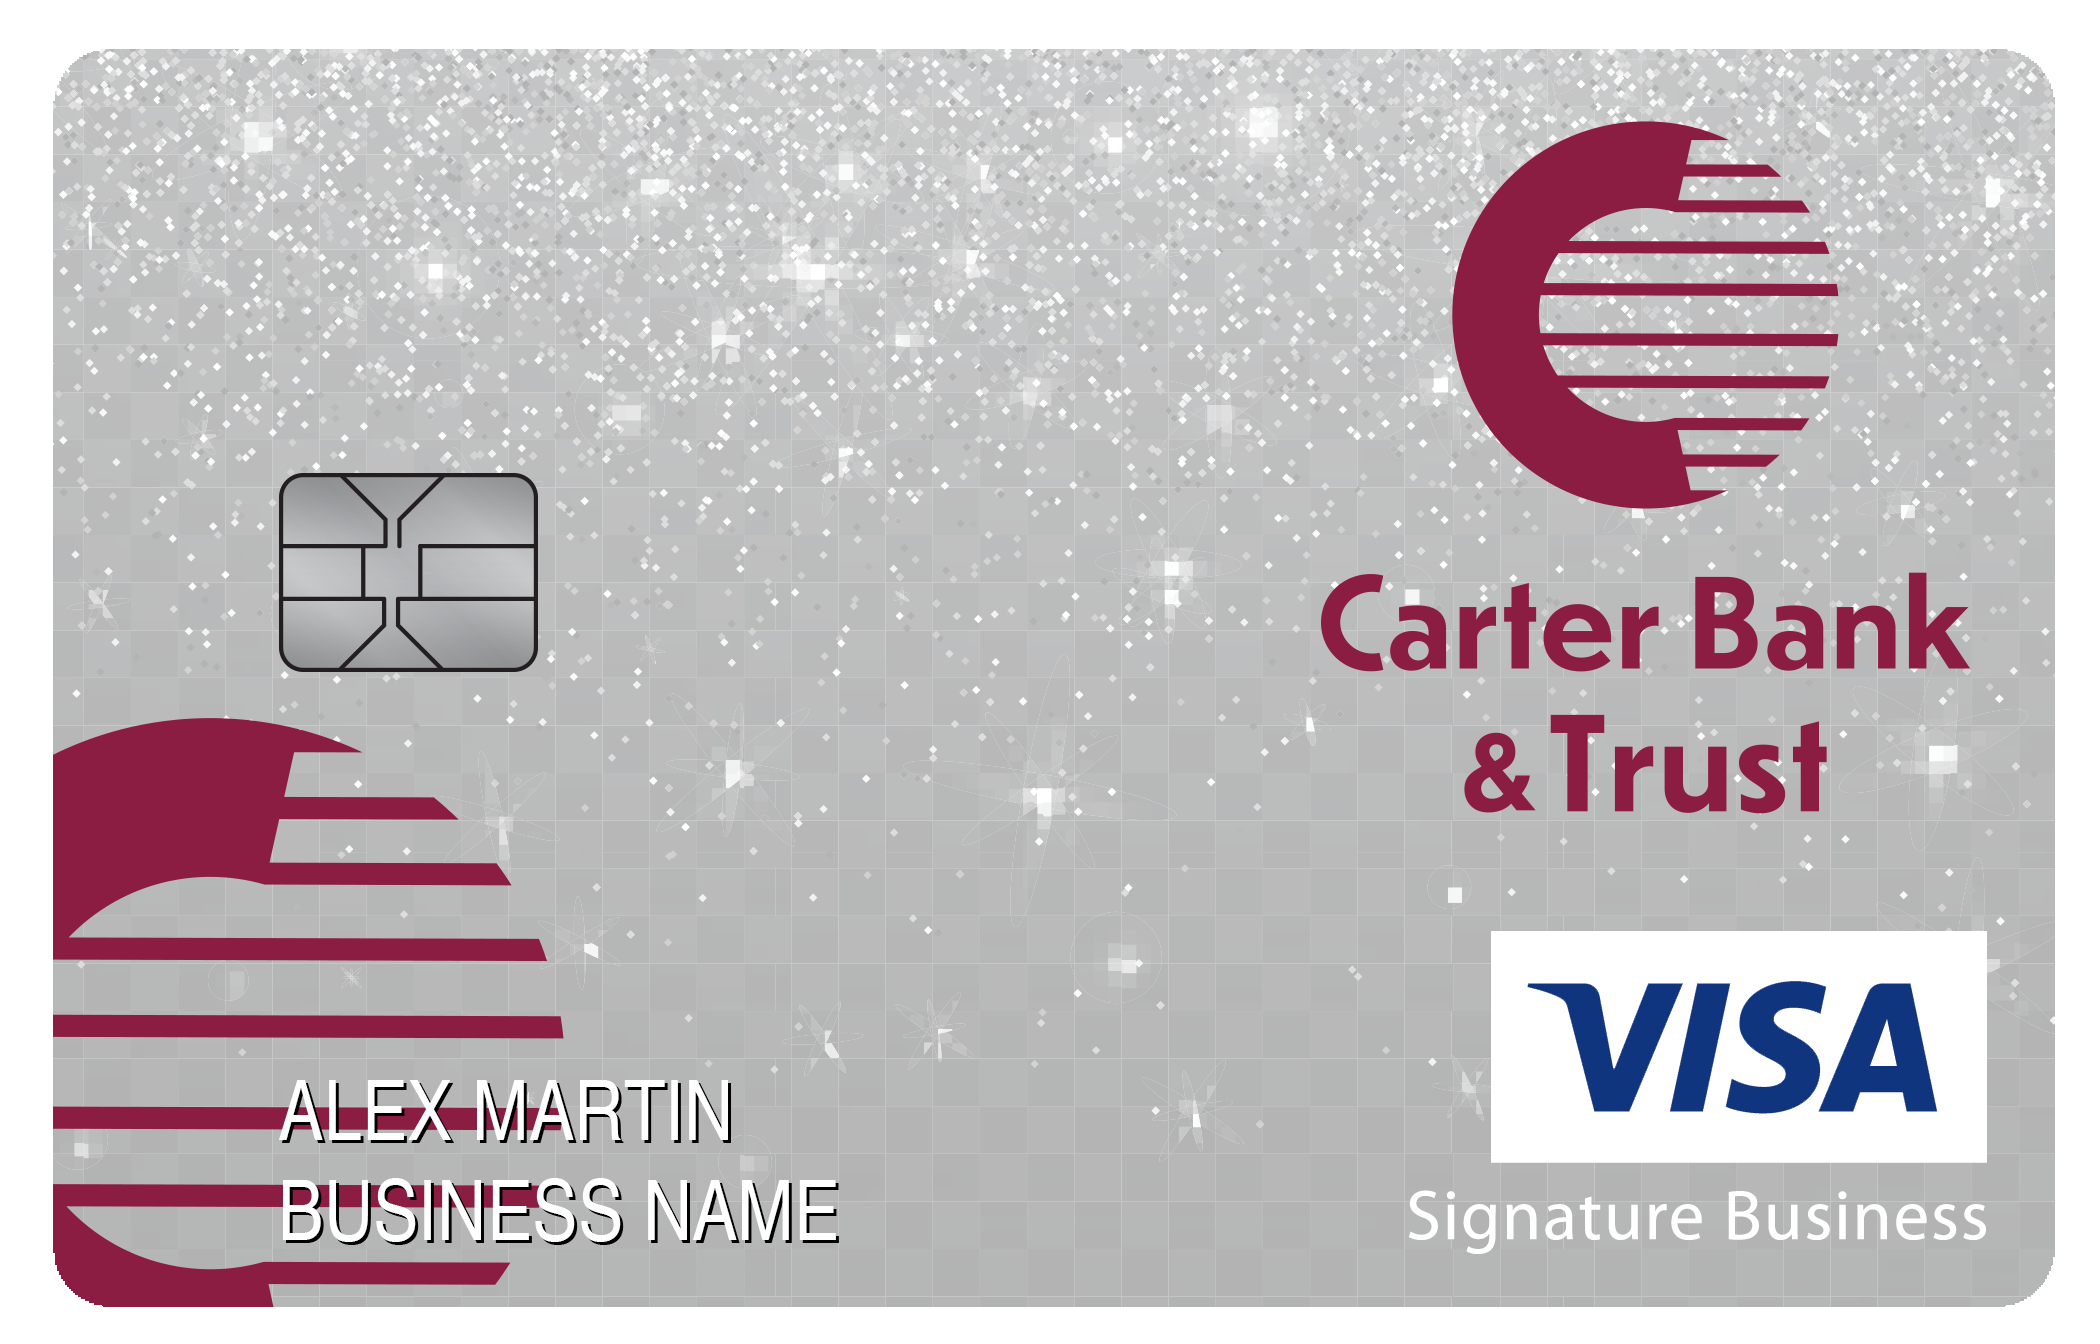 Carter Bank & Trust Smart Business Rewards Card